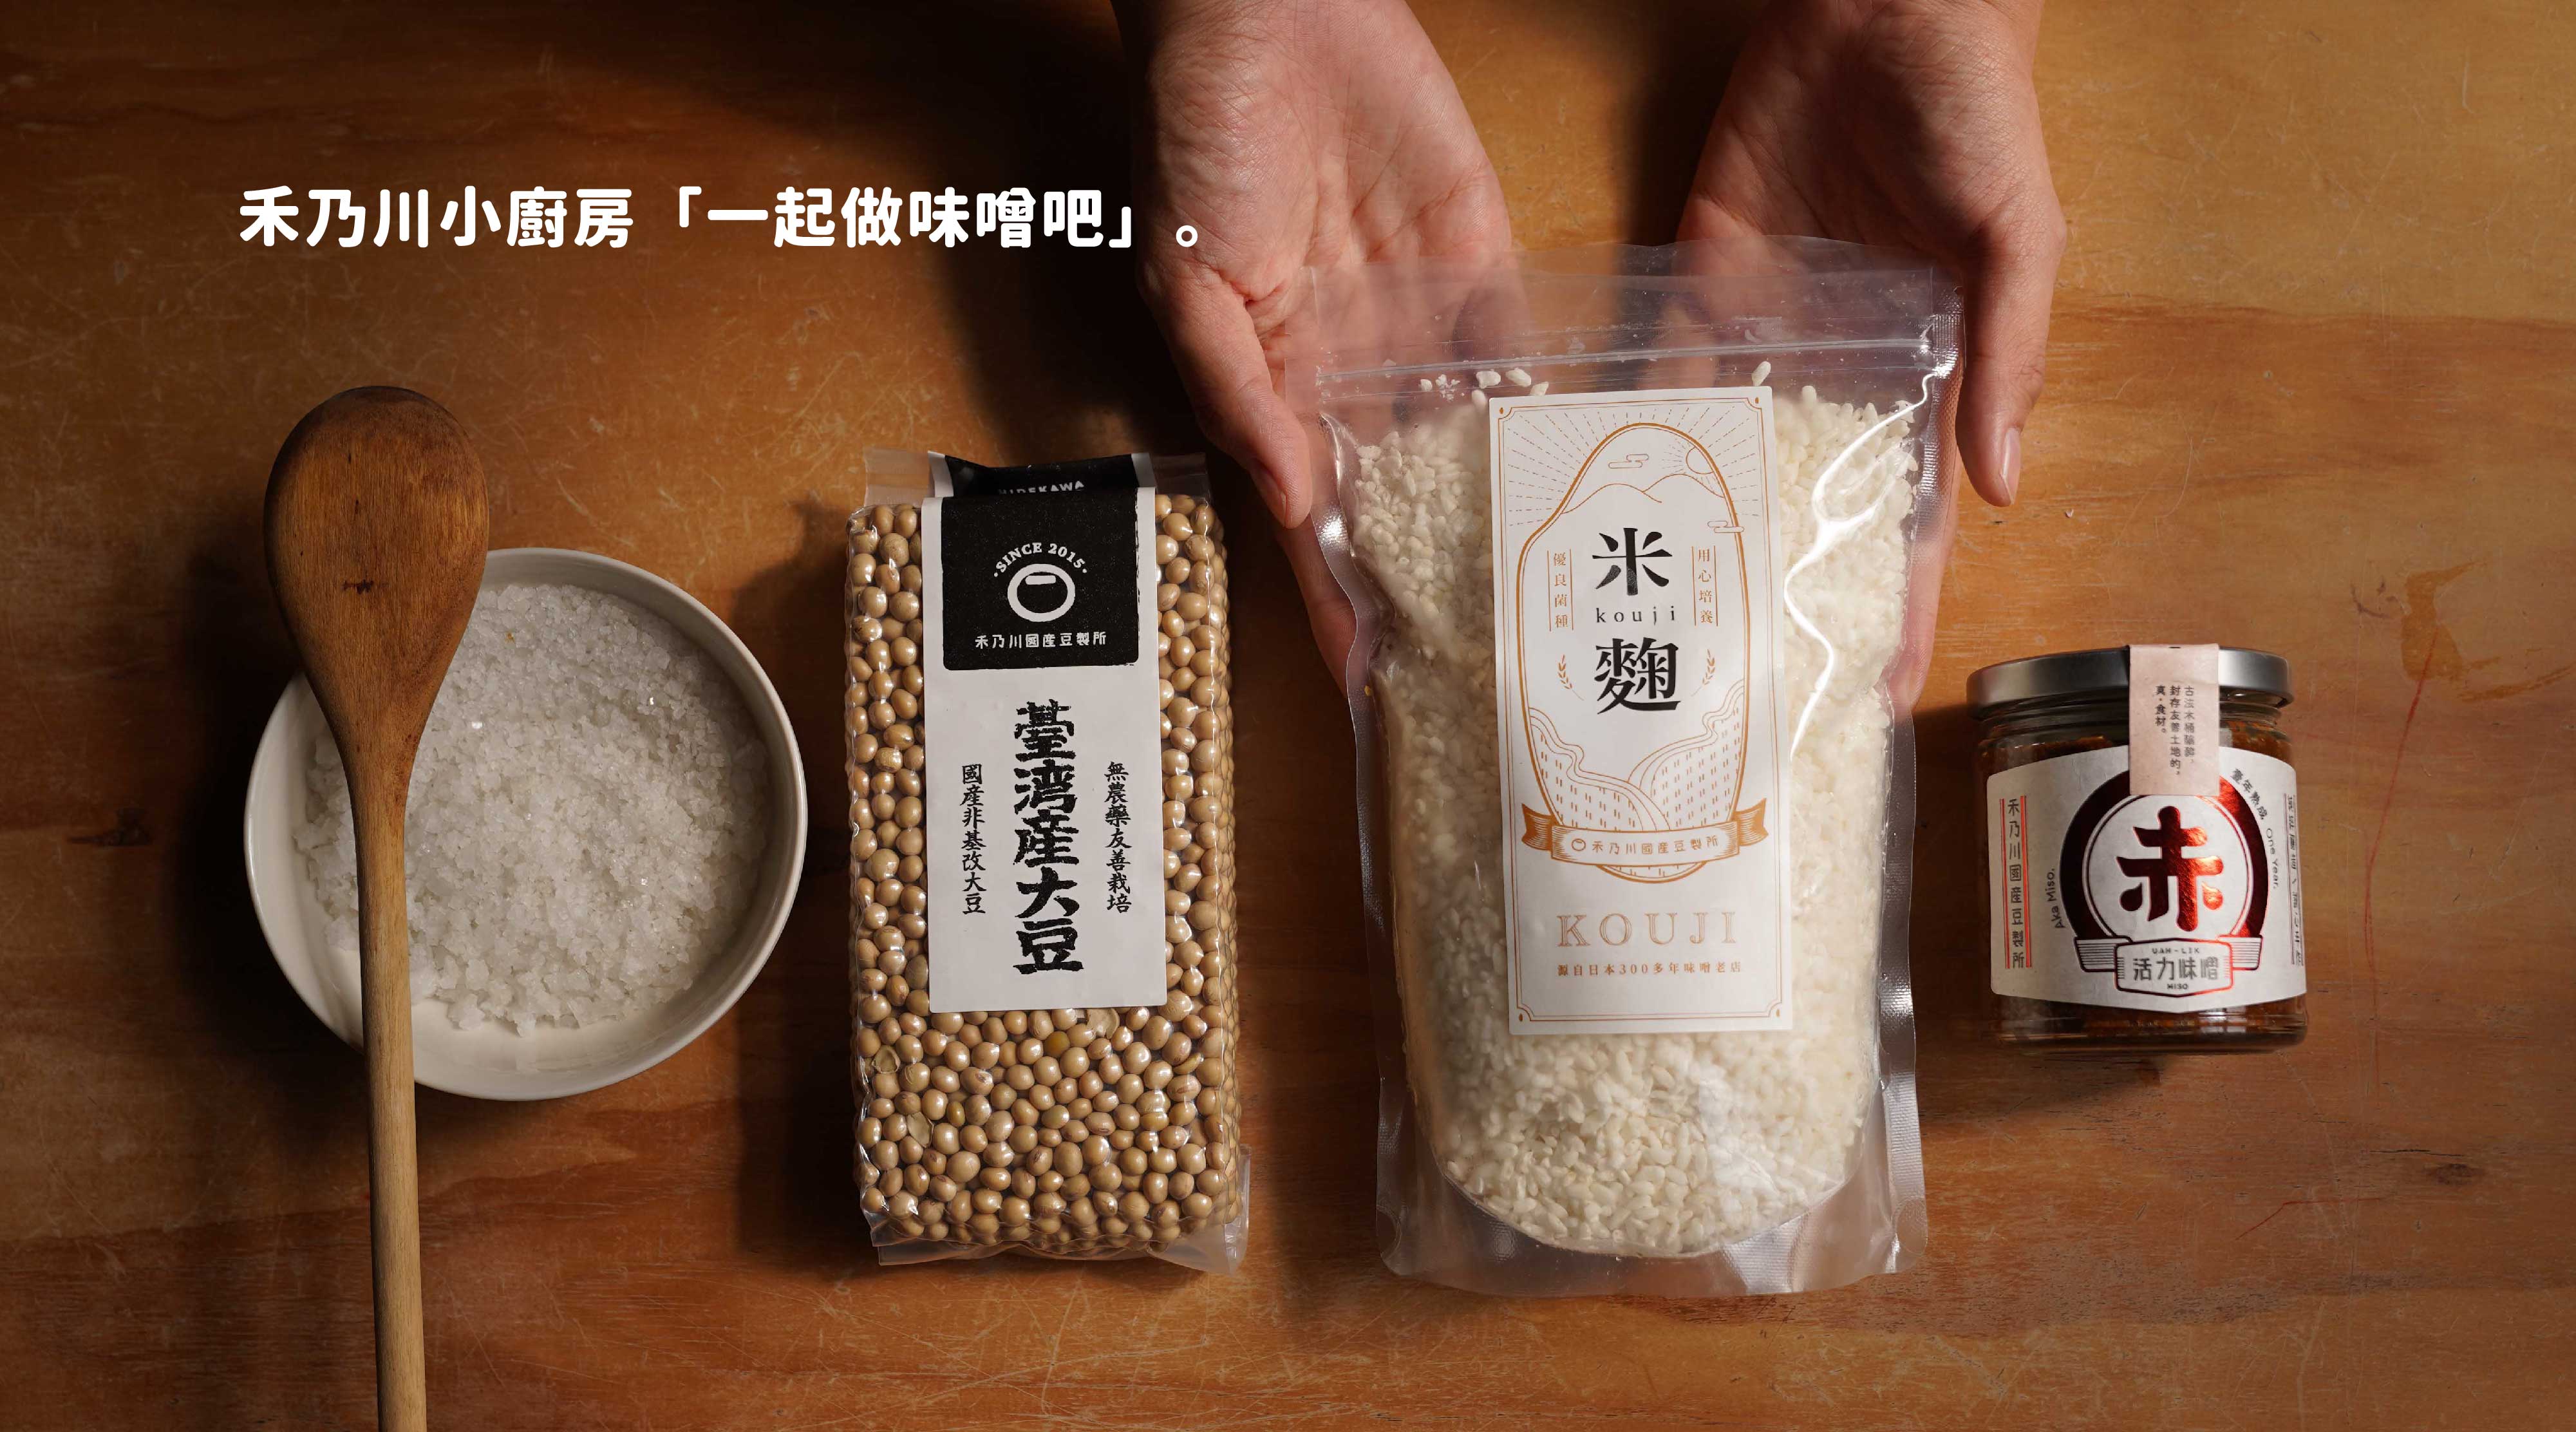 米麴包裝-07.jpg